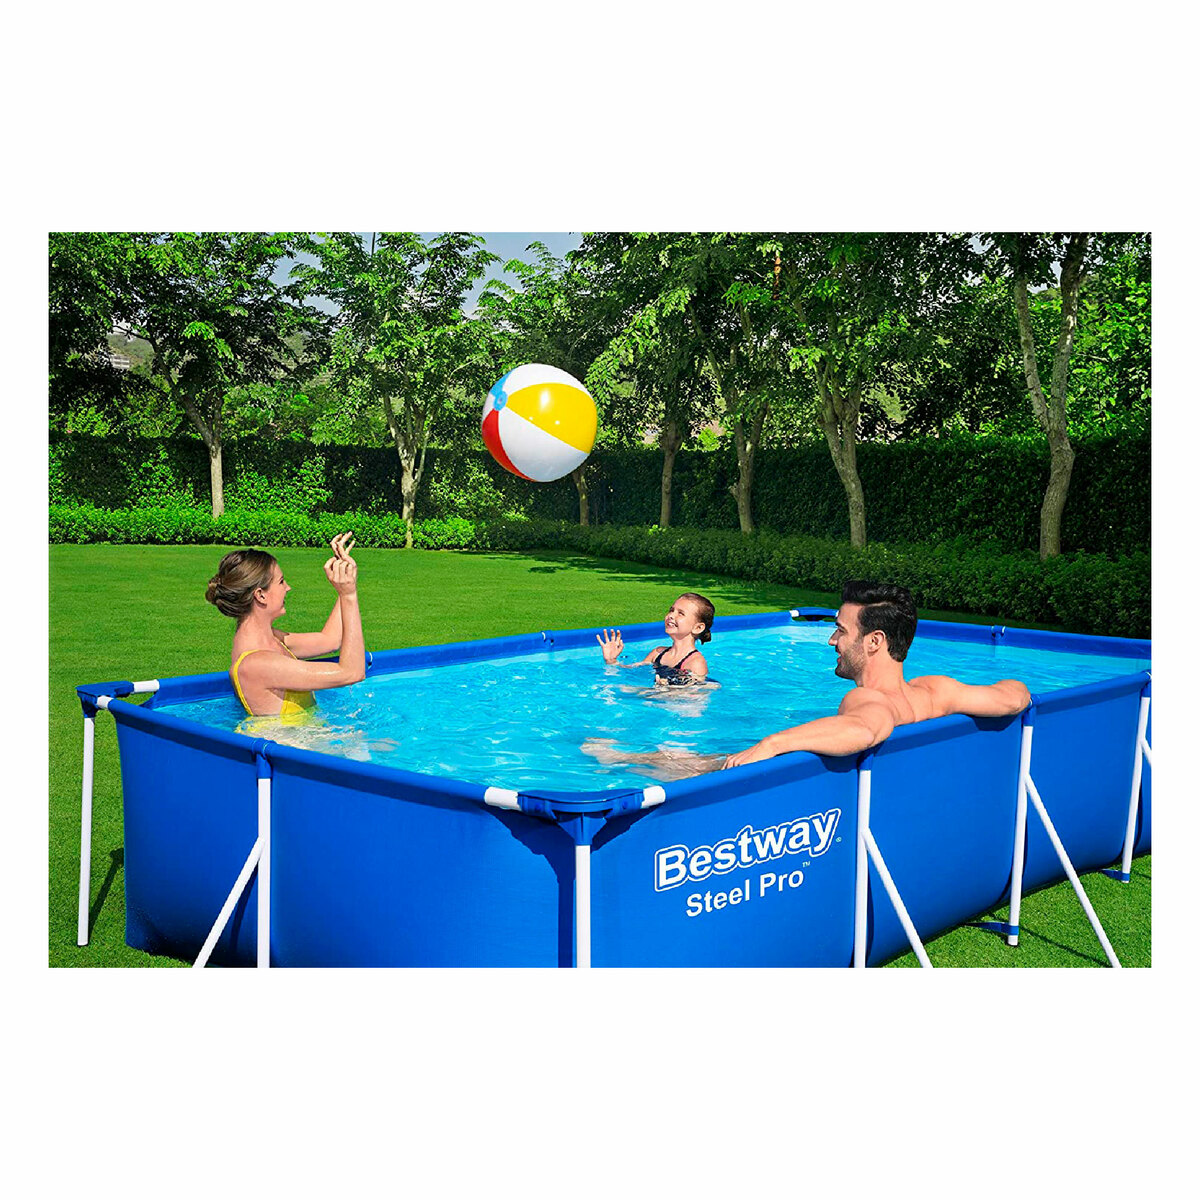 Bestway Splash Frame Pool 56405